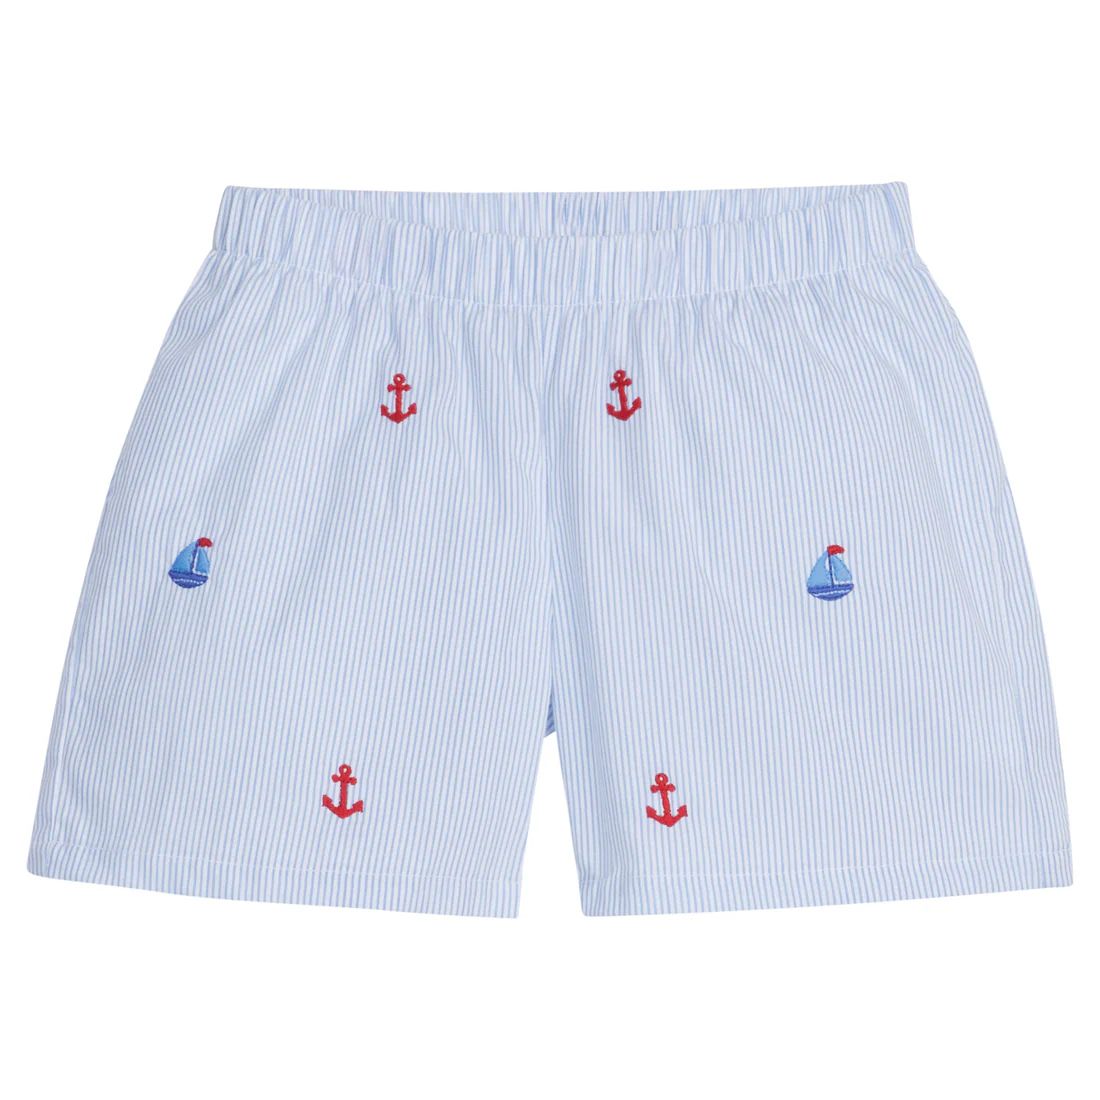 Embroidered Basic Short - Nautical | Little English